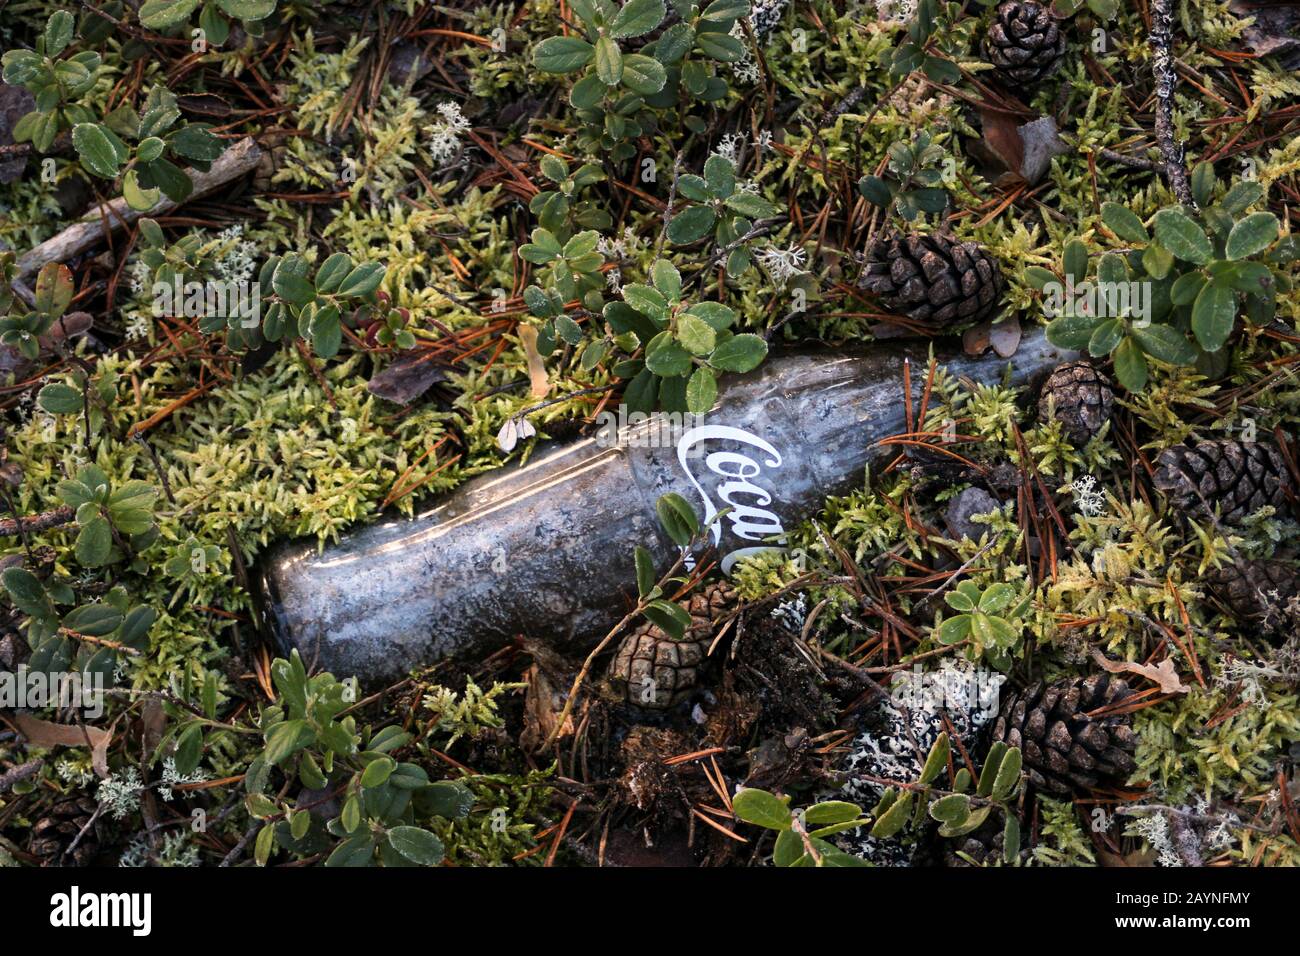 La vecchia bottiglia vuota della Coca-Cola è stata così lunga nella natura che il muschio sta crescendo sopra esso. Lapponia Finlandese. Foto Stock